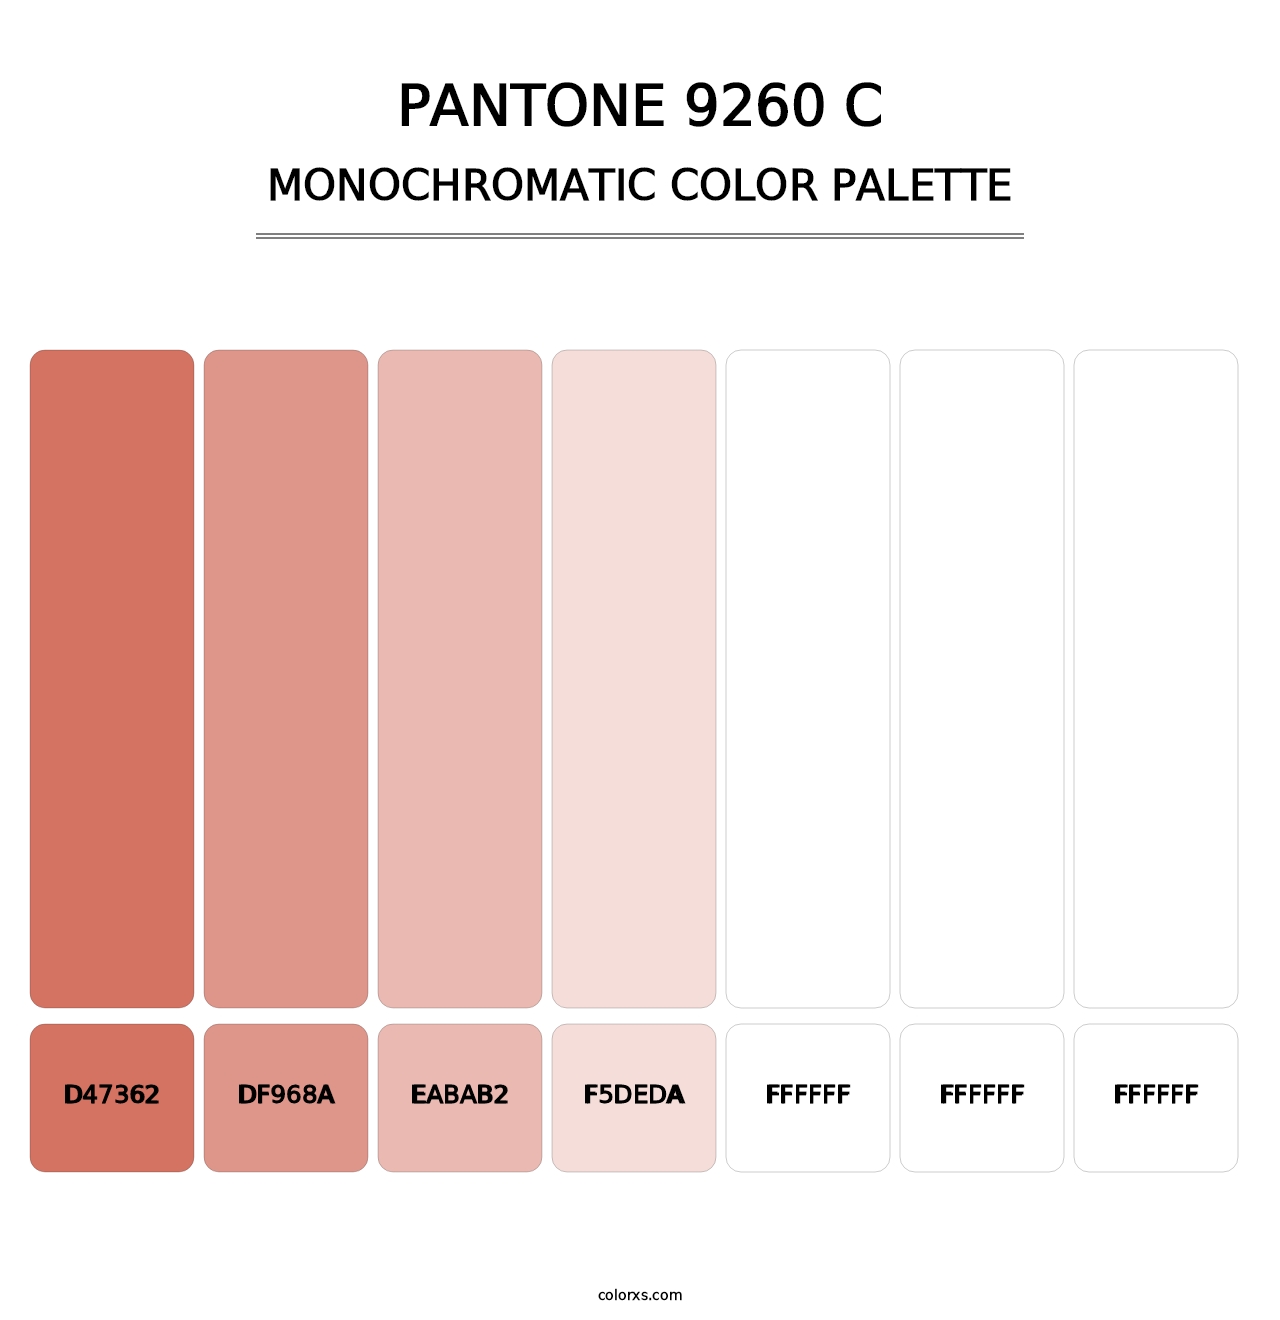 PANTONE 9260 C - Monochromatic Color Palette